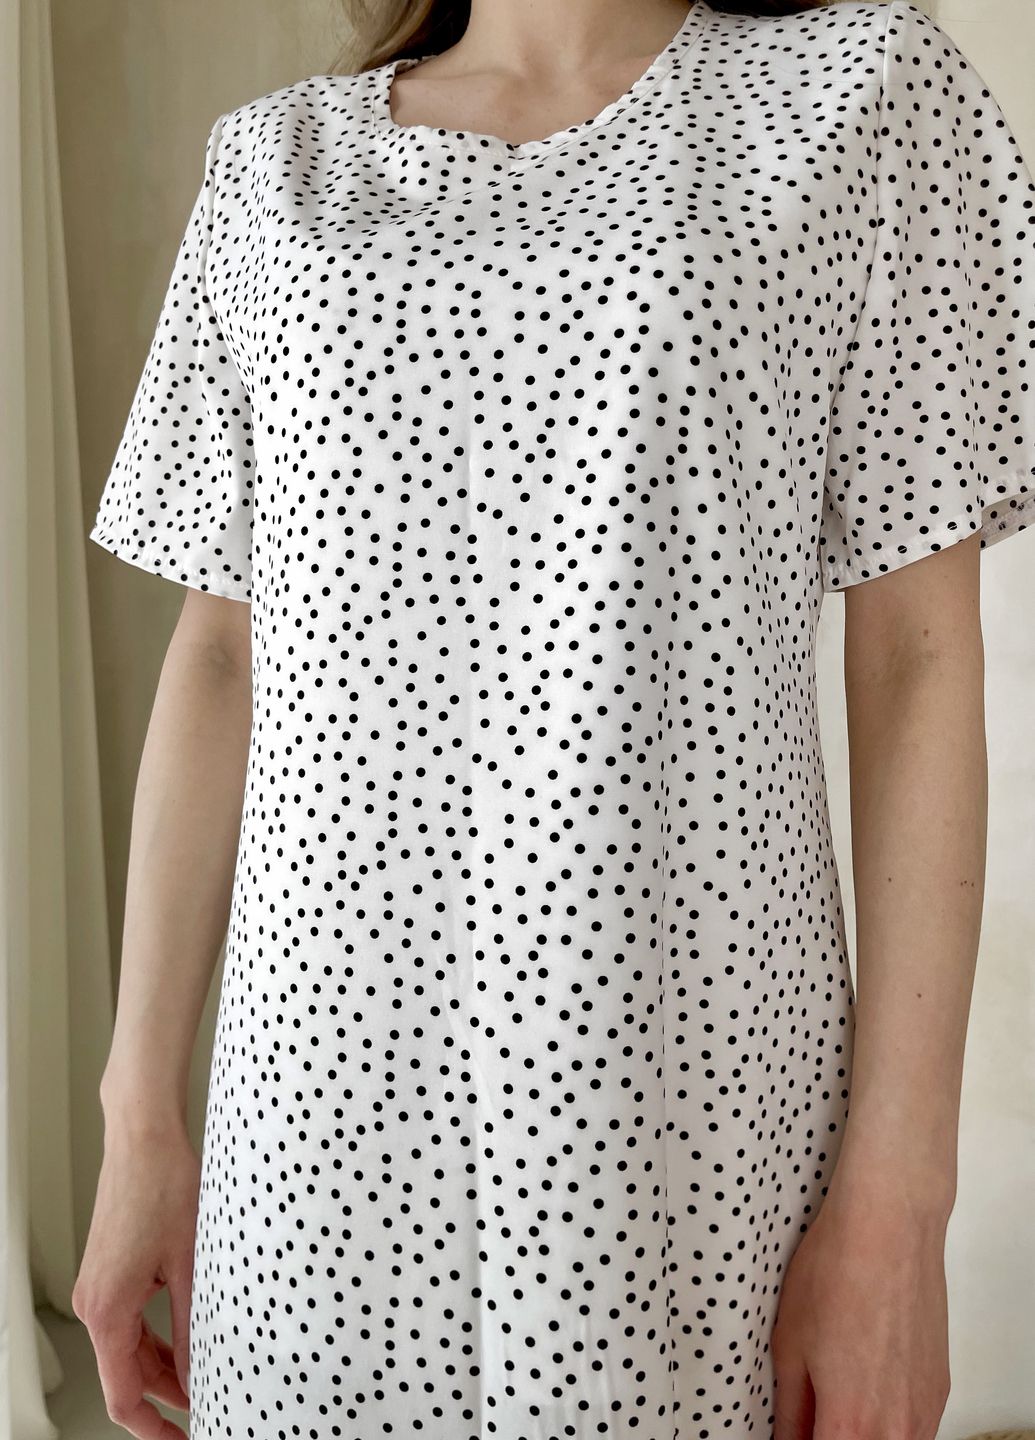 Купить Женское платье до колена в горох с разрезом и пояском белое Merlini Асти 700000202, размер 42-44 (S-M) в интернет-магазине